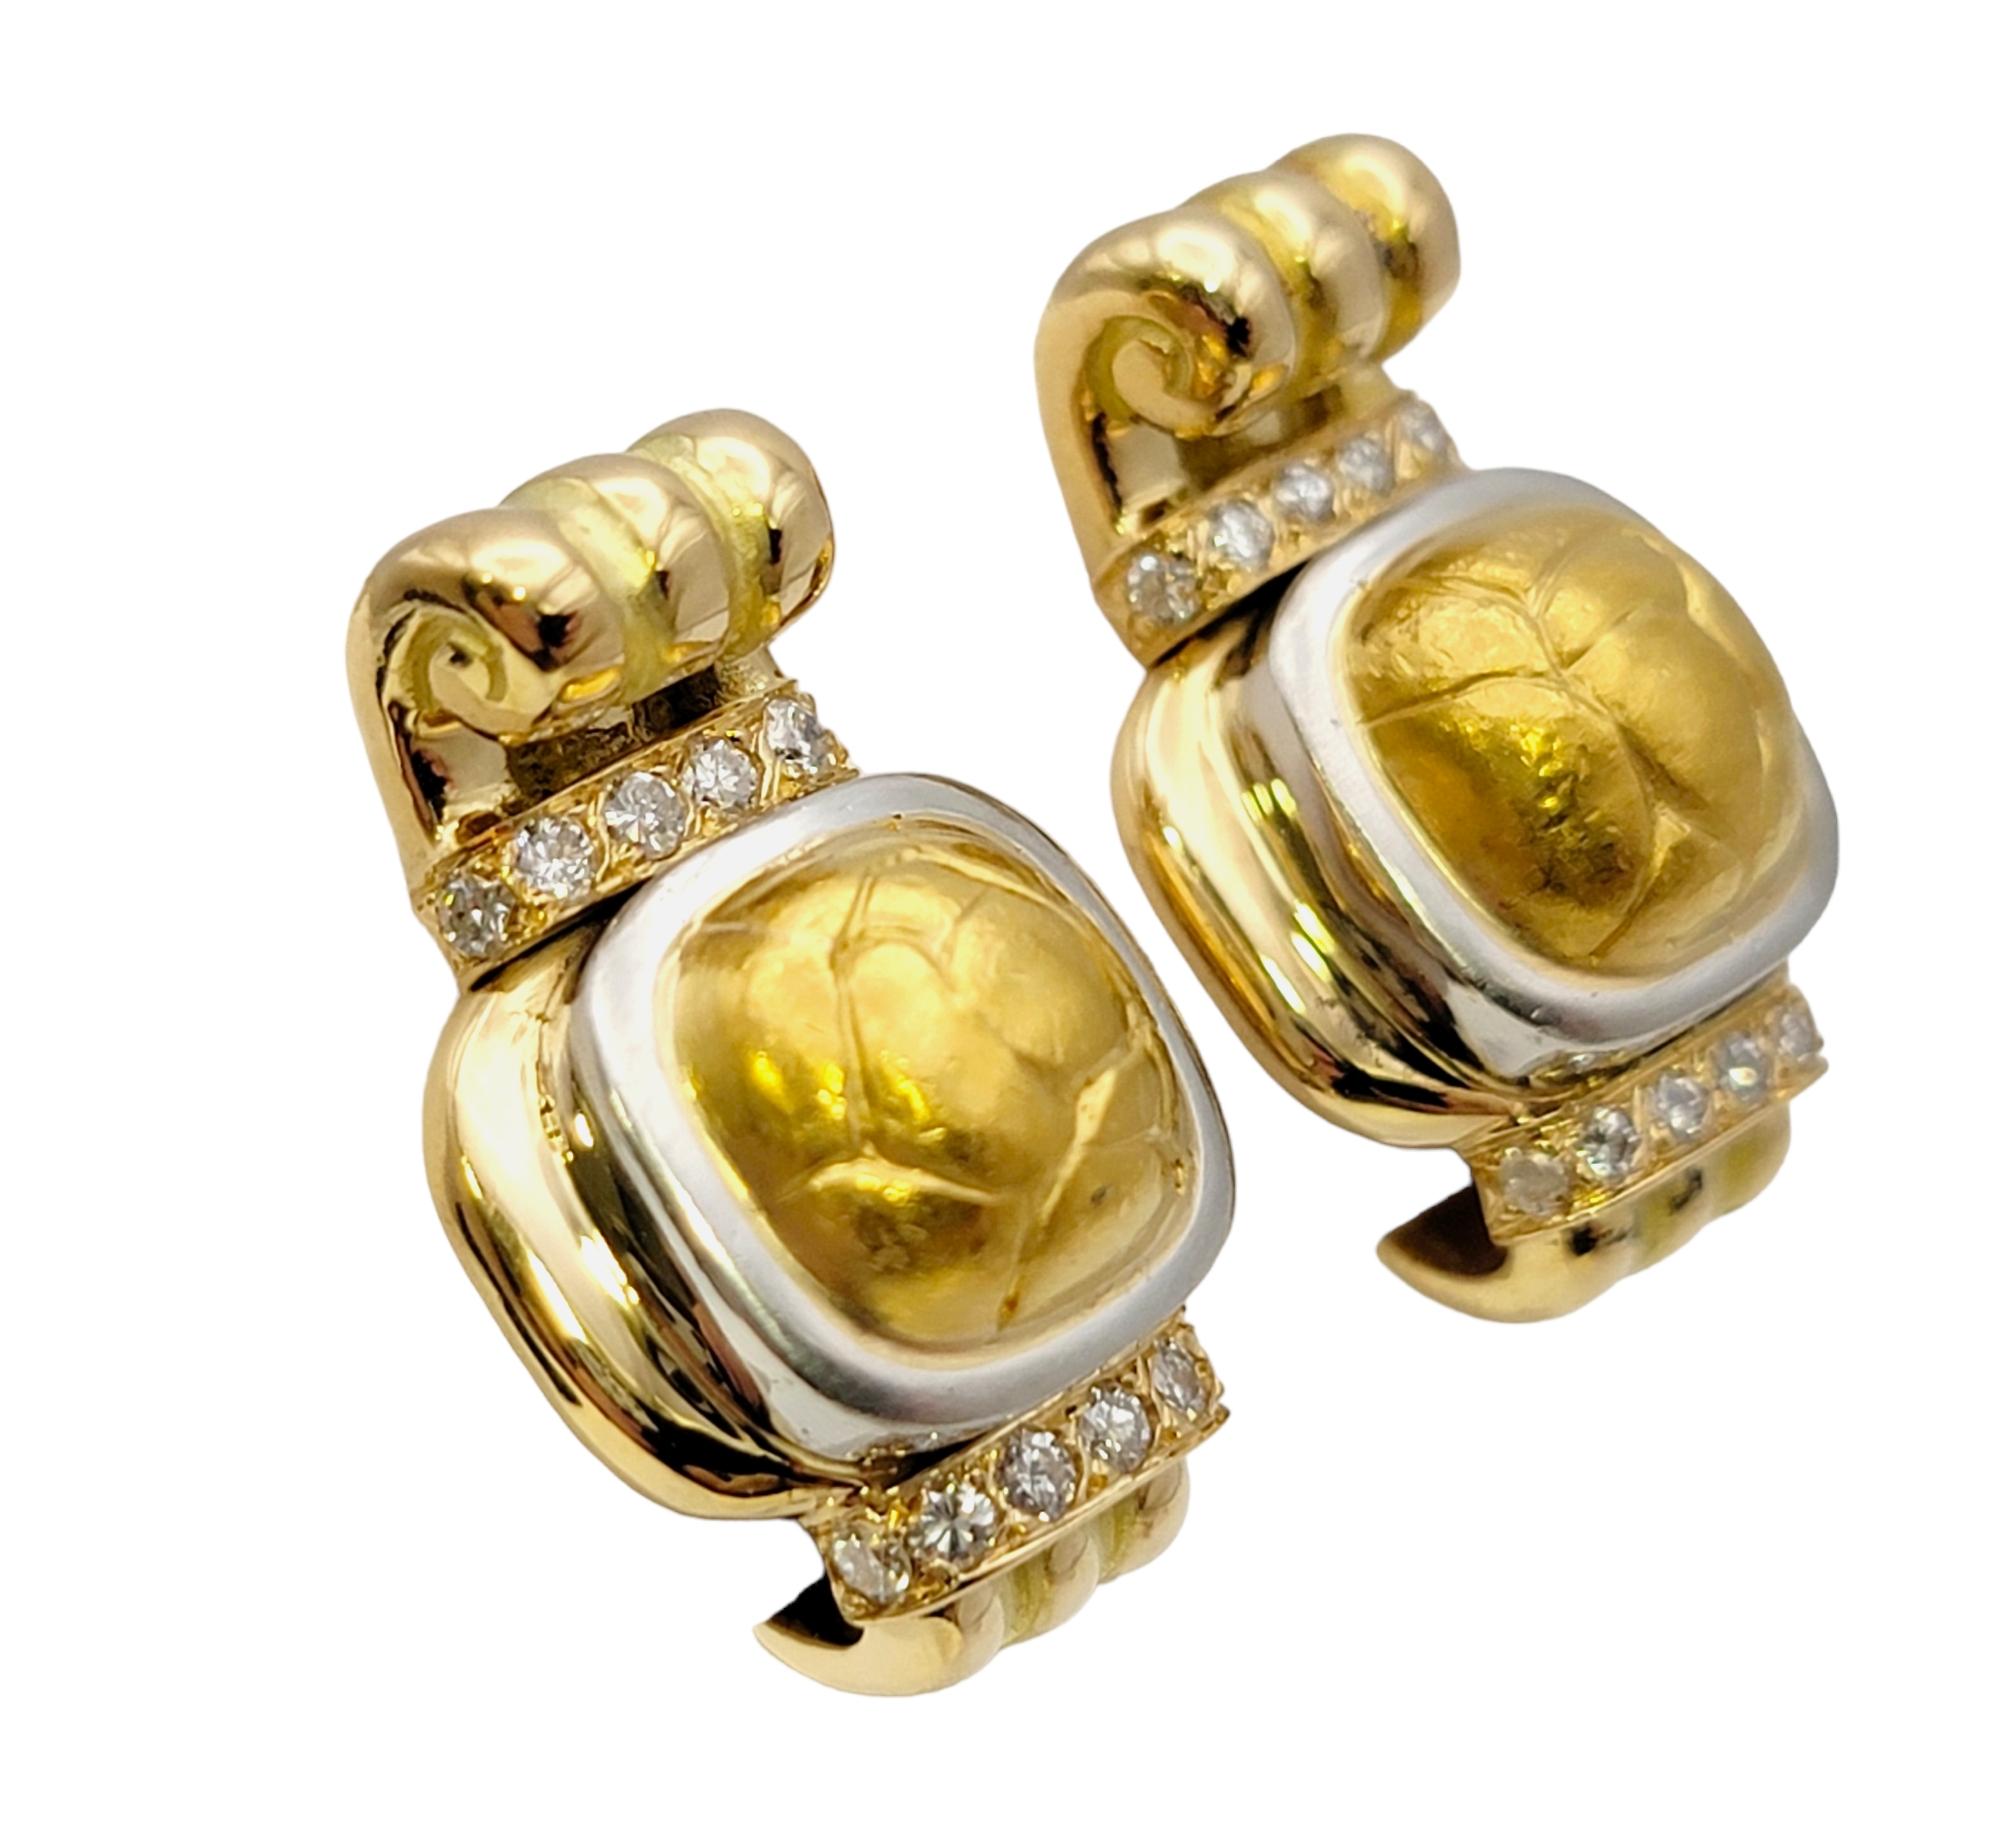 Boucles d'oreilles élégantes du créateur de luxe français Chaumet. Ces luxueuses paires en or jaune 18 carats présentent un design unique et une fabrication exquise, et s'affichent de manière sophistiquée sur l'oreille.   

Ces magnifiques boucles